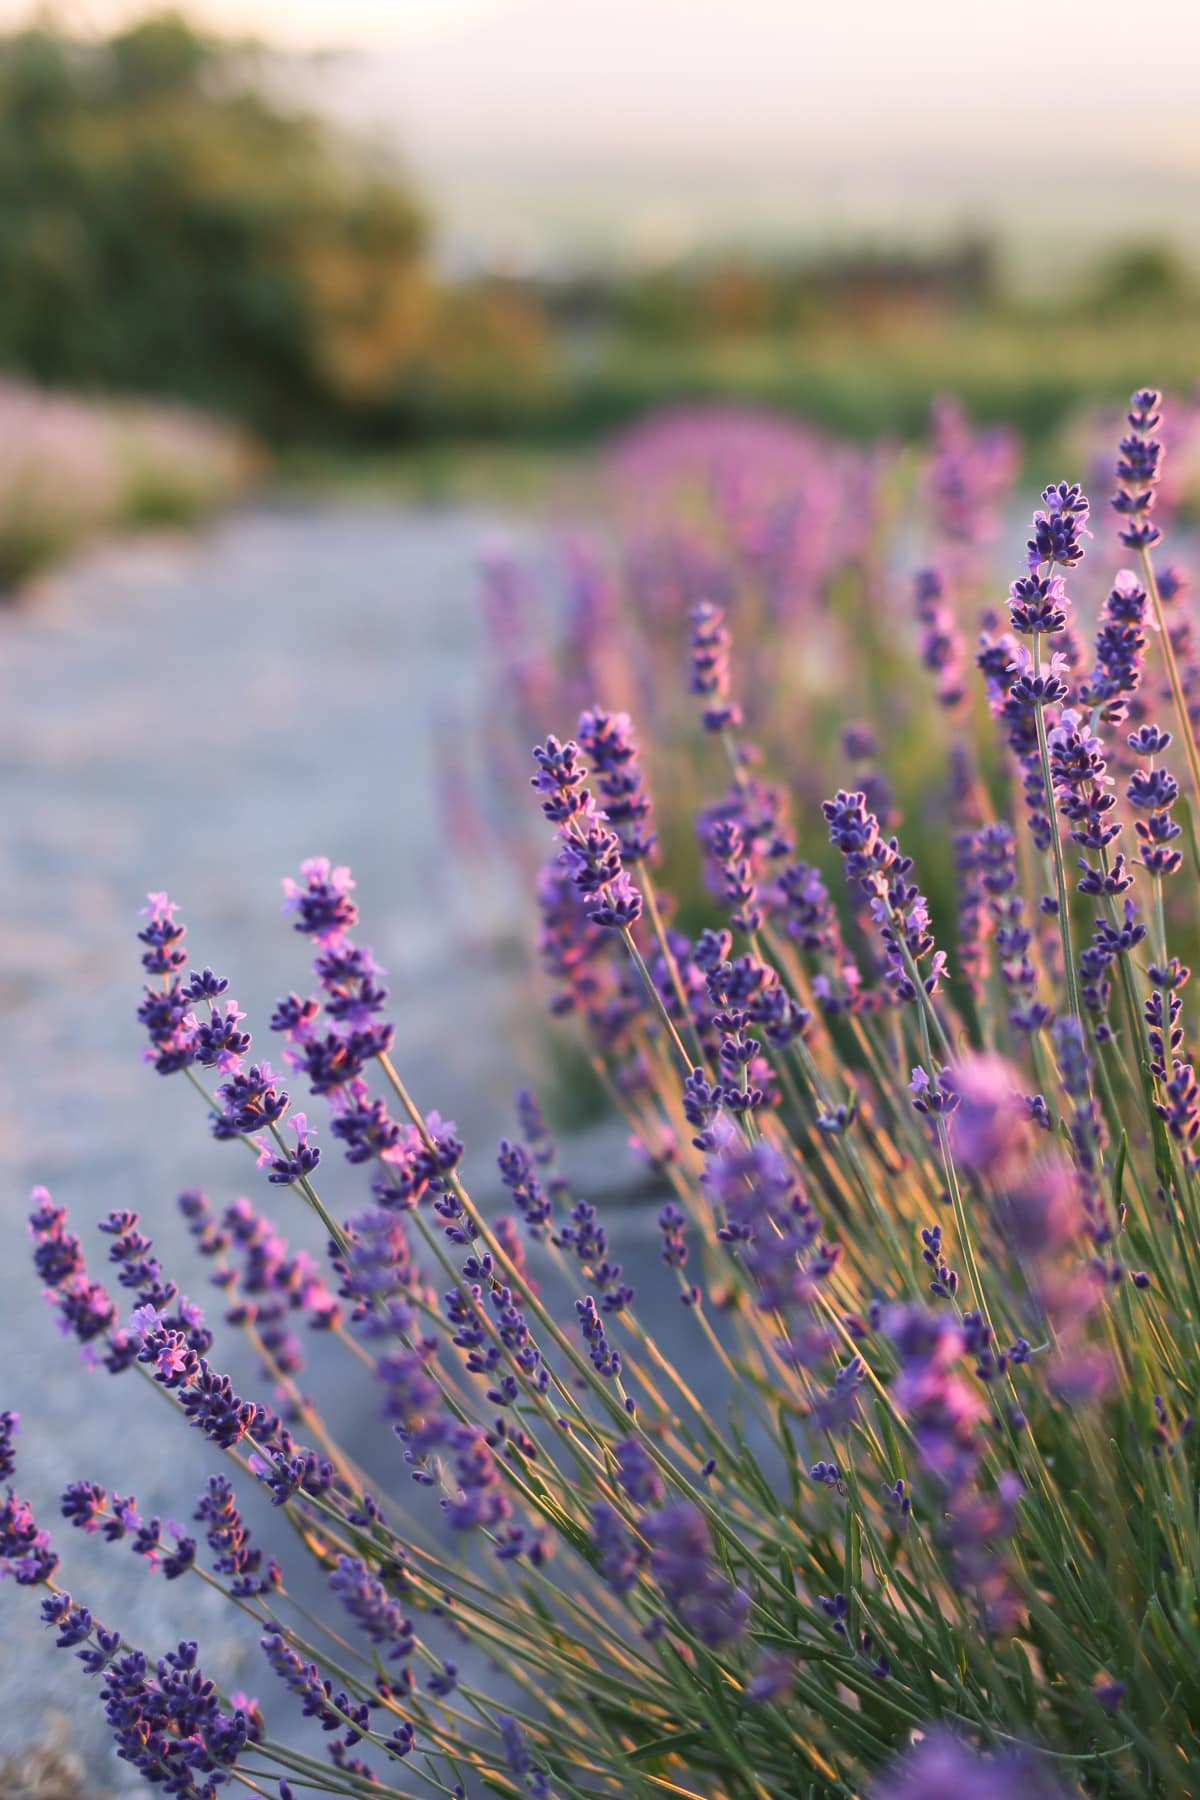 A purple lavender plant